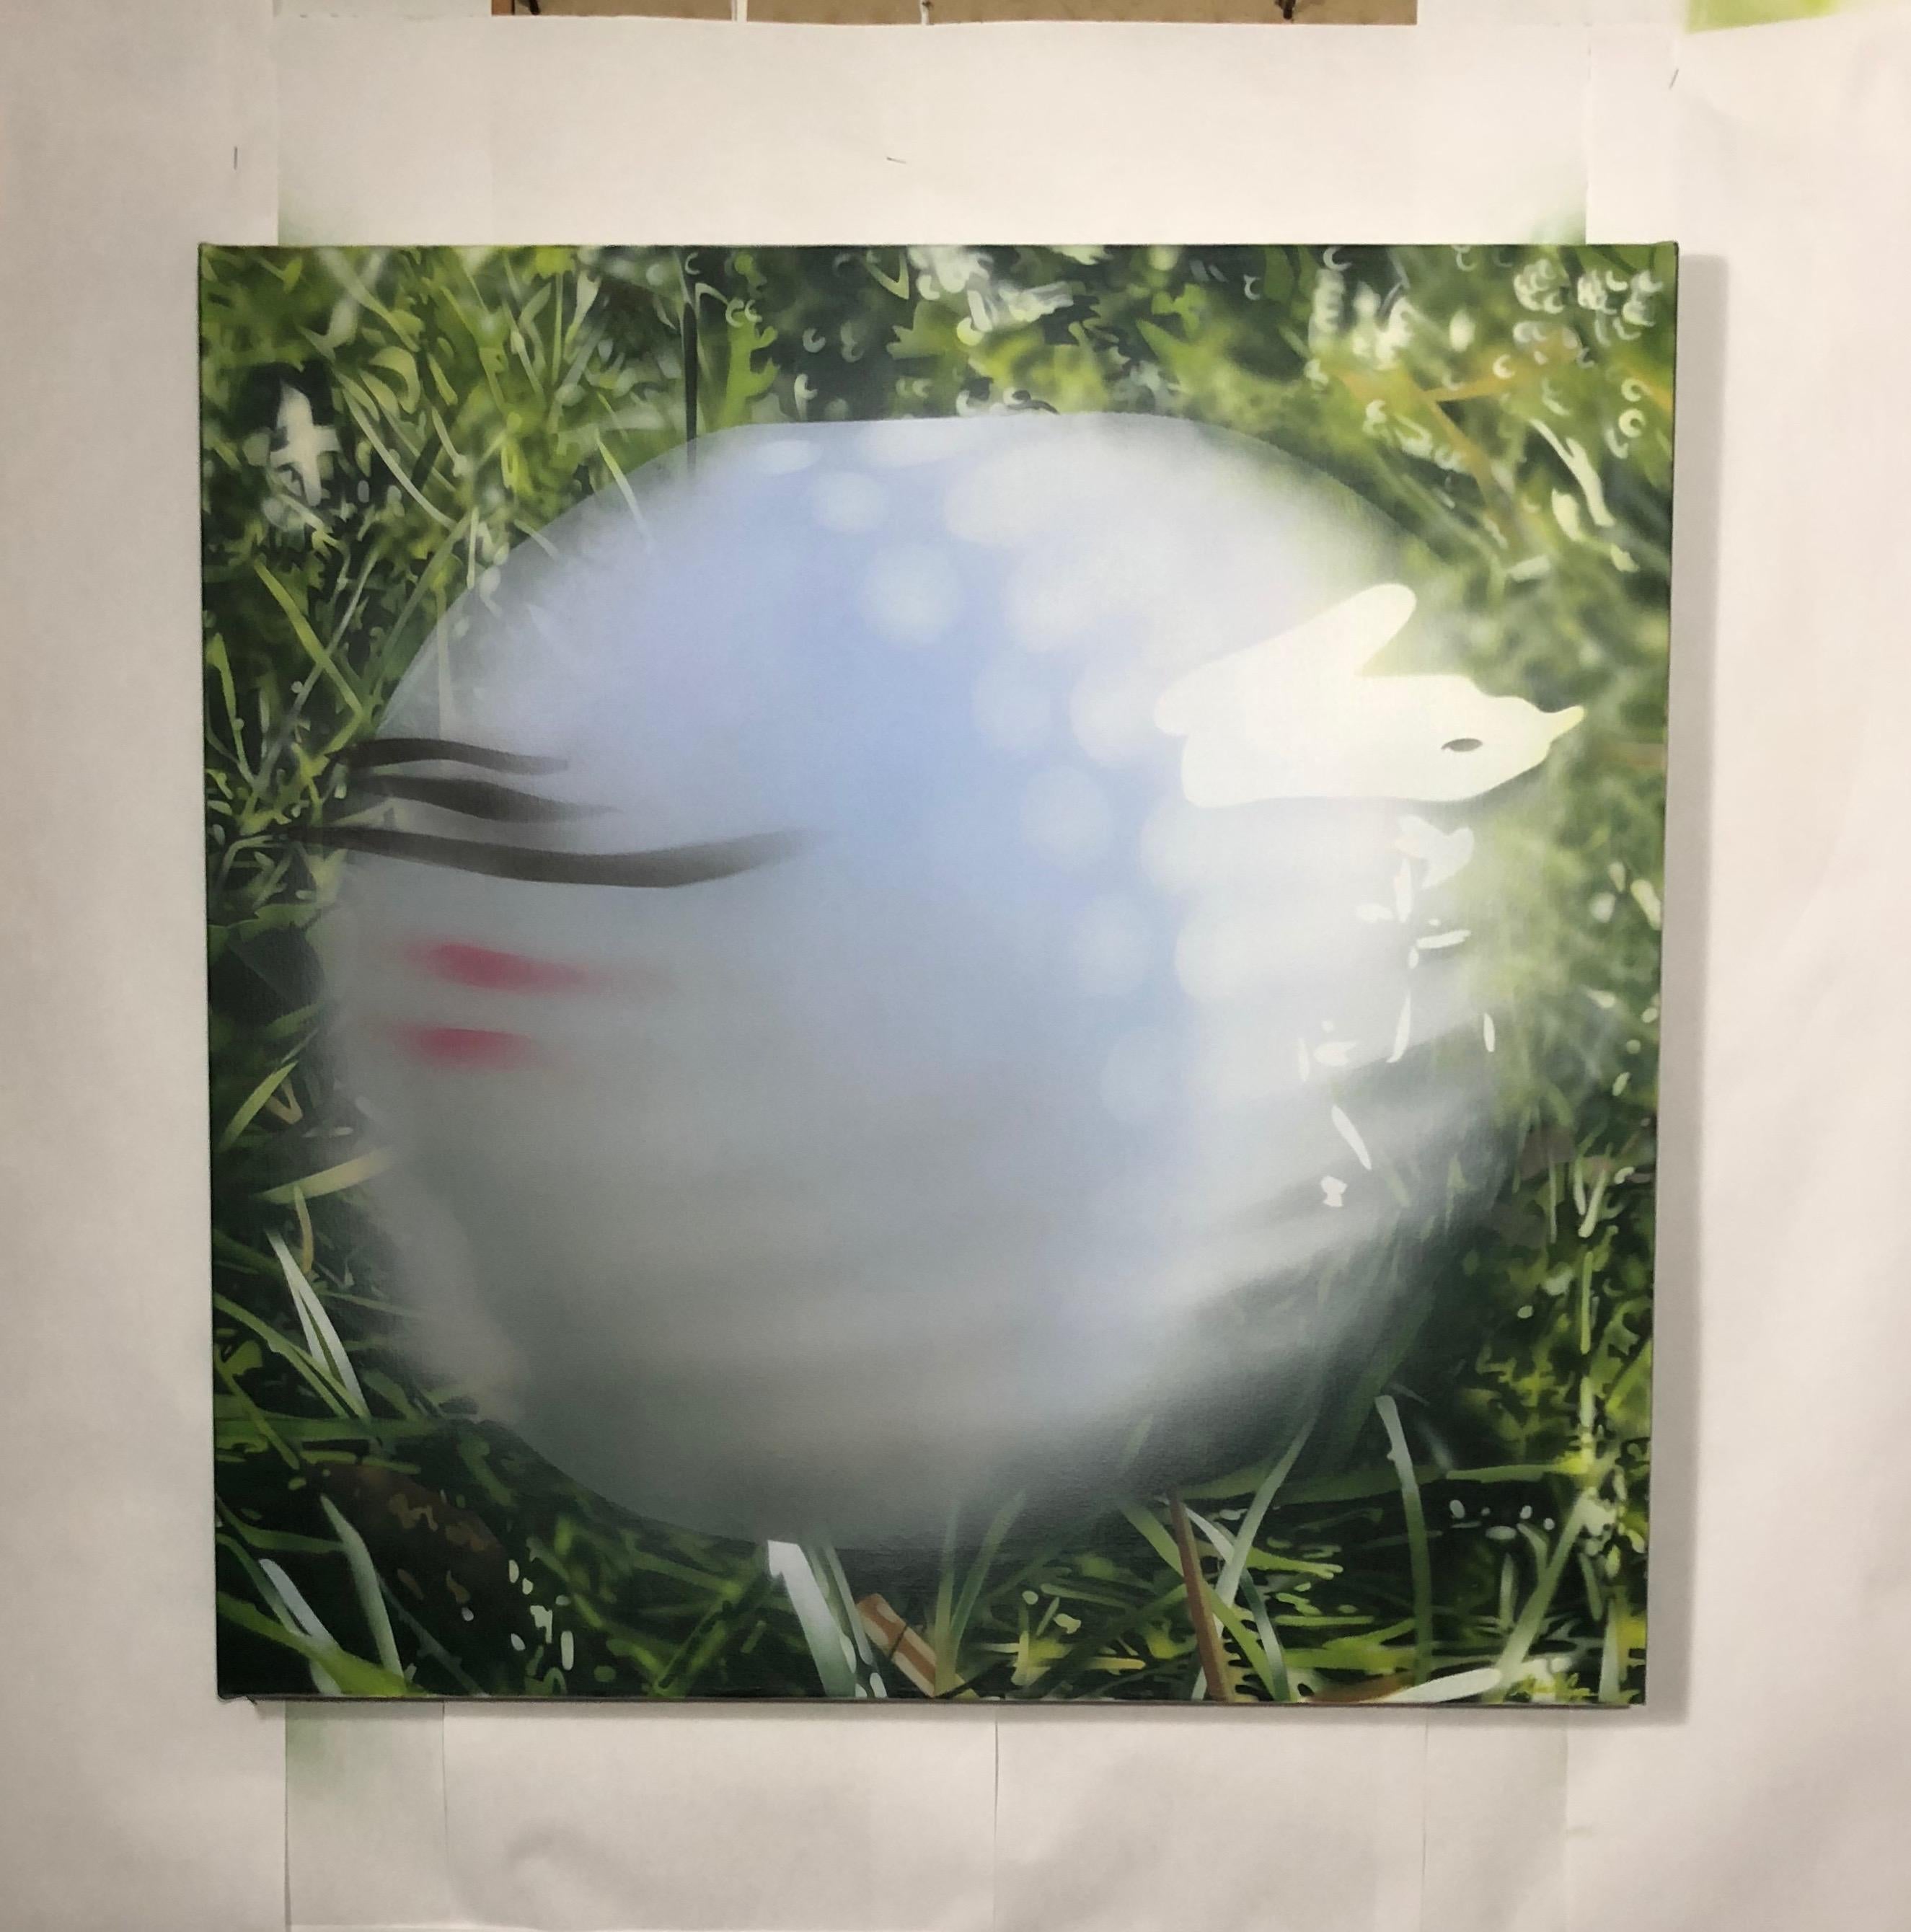 <p>Kommentare des Künstlers<br />Ein rasender Golfball, eingefroren in der Zeit, kurz nachdem er von einem Eisen getroffen wurde. Starkes Morgenlicht tanzt auf dem Ball und dem umgebenden Gras. Teil einer Serie von fotorealistischen Gemälden mit dem